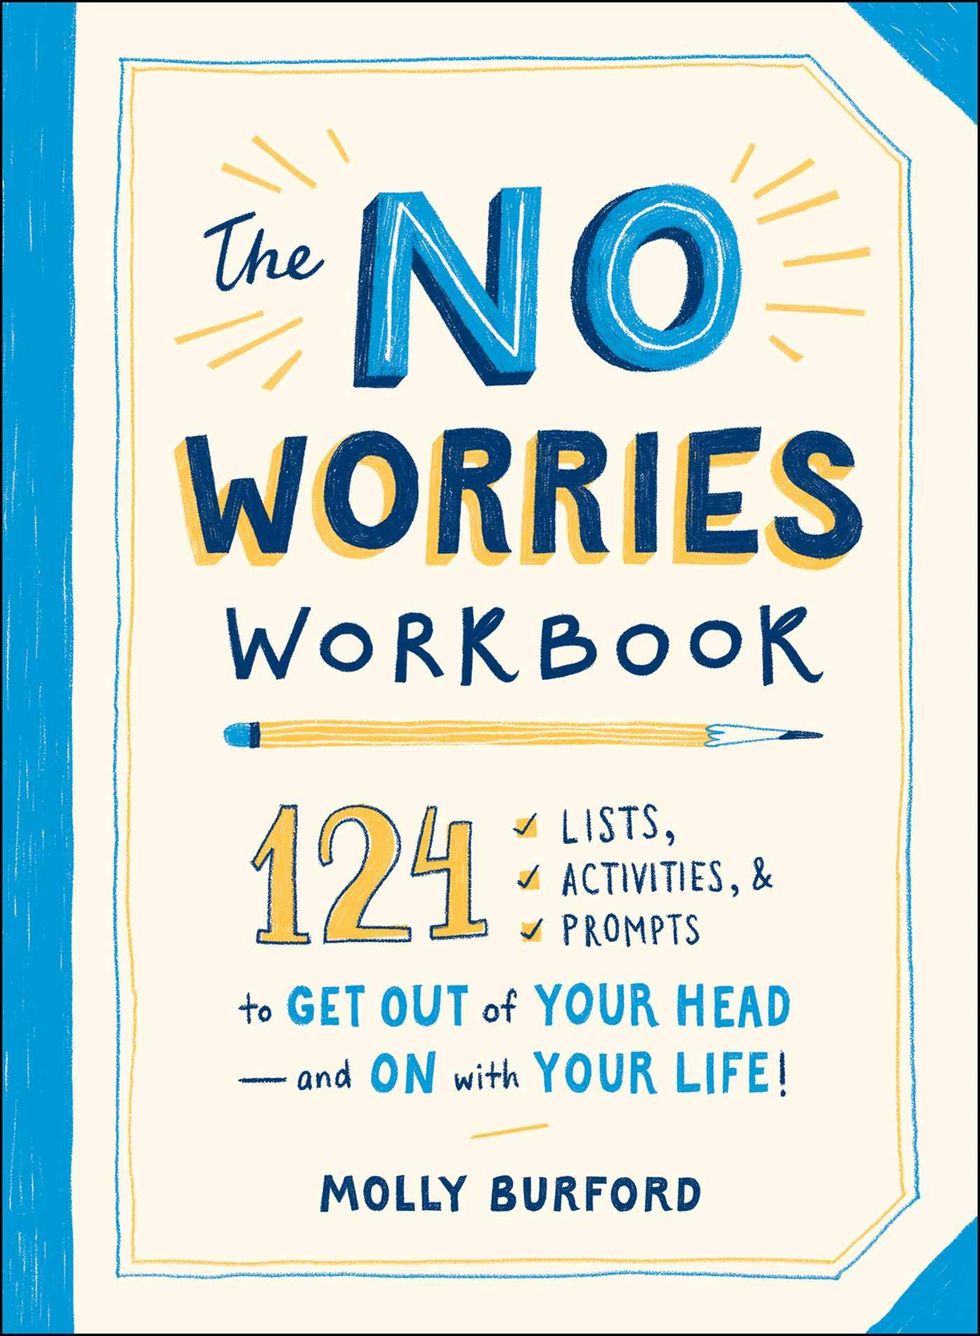 The No Worries Workbook